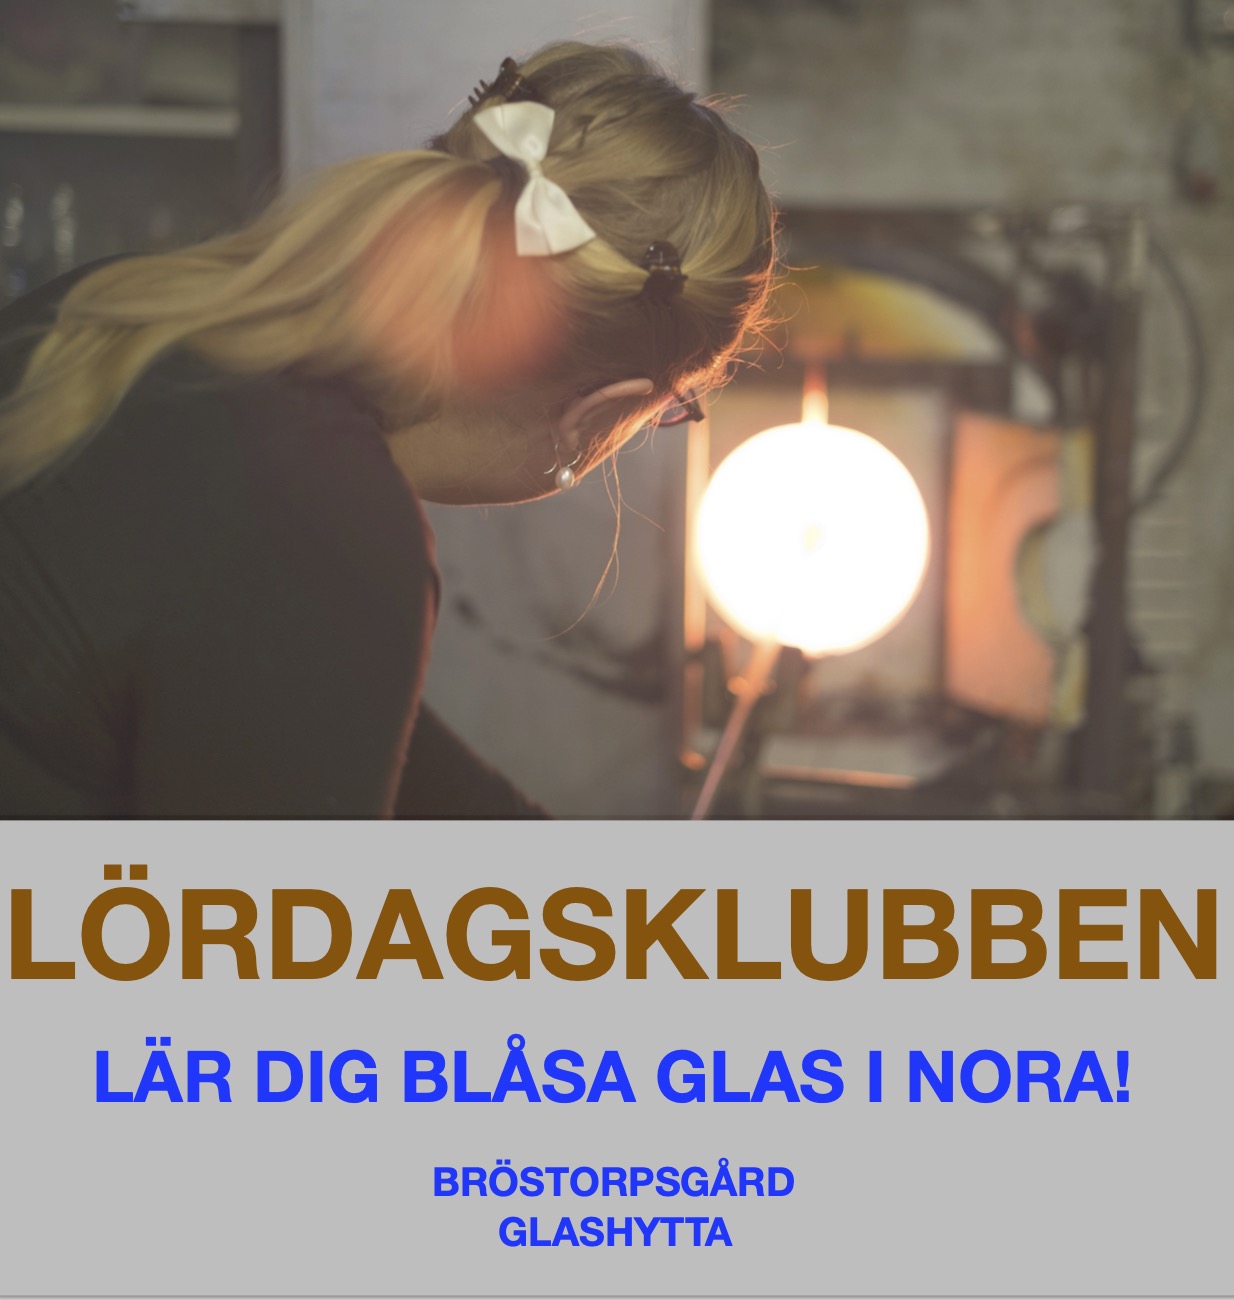 Lördagsklubben, Lär dig blåsa glas på Bröstorpsgård i Nora!